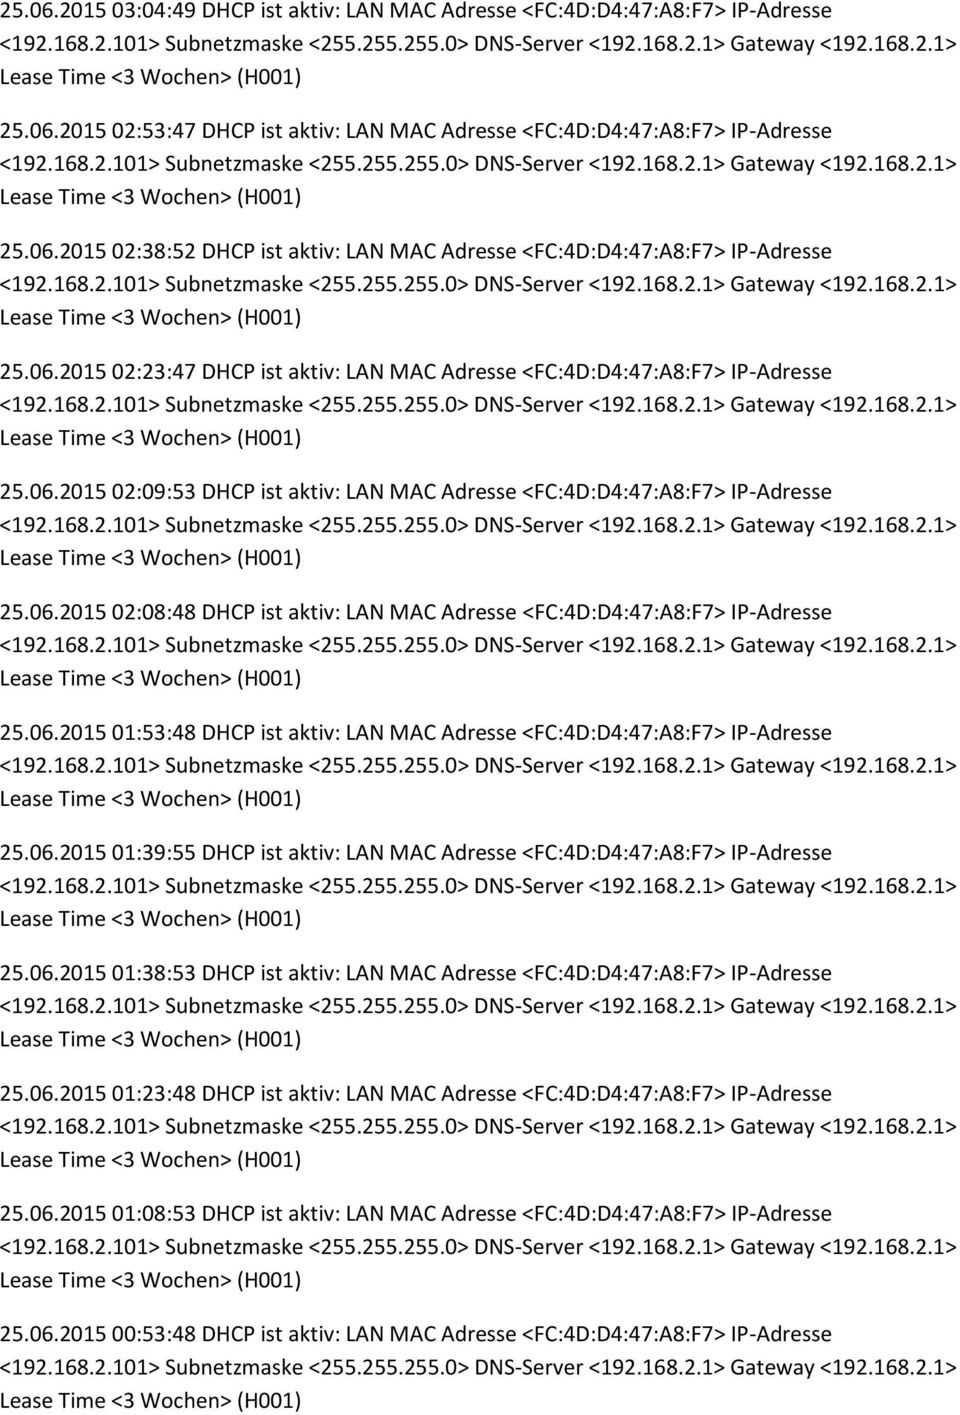 06.2015 01:53:48 DHCP ist aktiv: LAN MAC Adresse <FC:4D:D4:47:A8:F7> IP-Adresse 25.06.2015 01:39:55 DHCP ist aktiv: LAN MAC Adresse <FC:4D:D4:47:A8:F7> IP-Adresse 25.06.2015 01:38:53 DHCP ist aktiv: LAN MAC Adresse <FC:4D:D4:47:A8:F7> IP-Adresse 25.